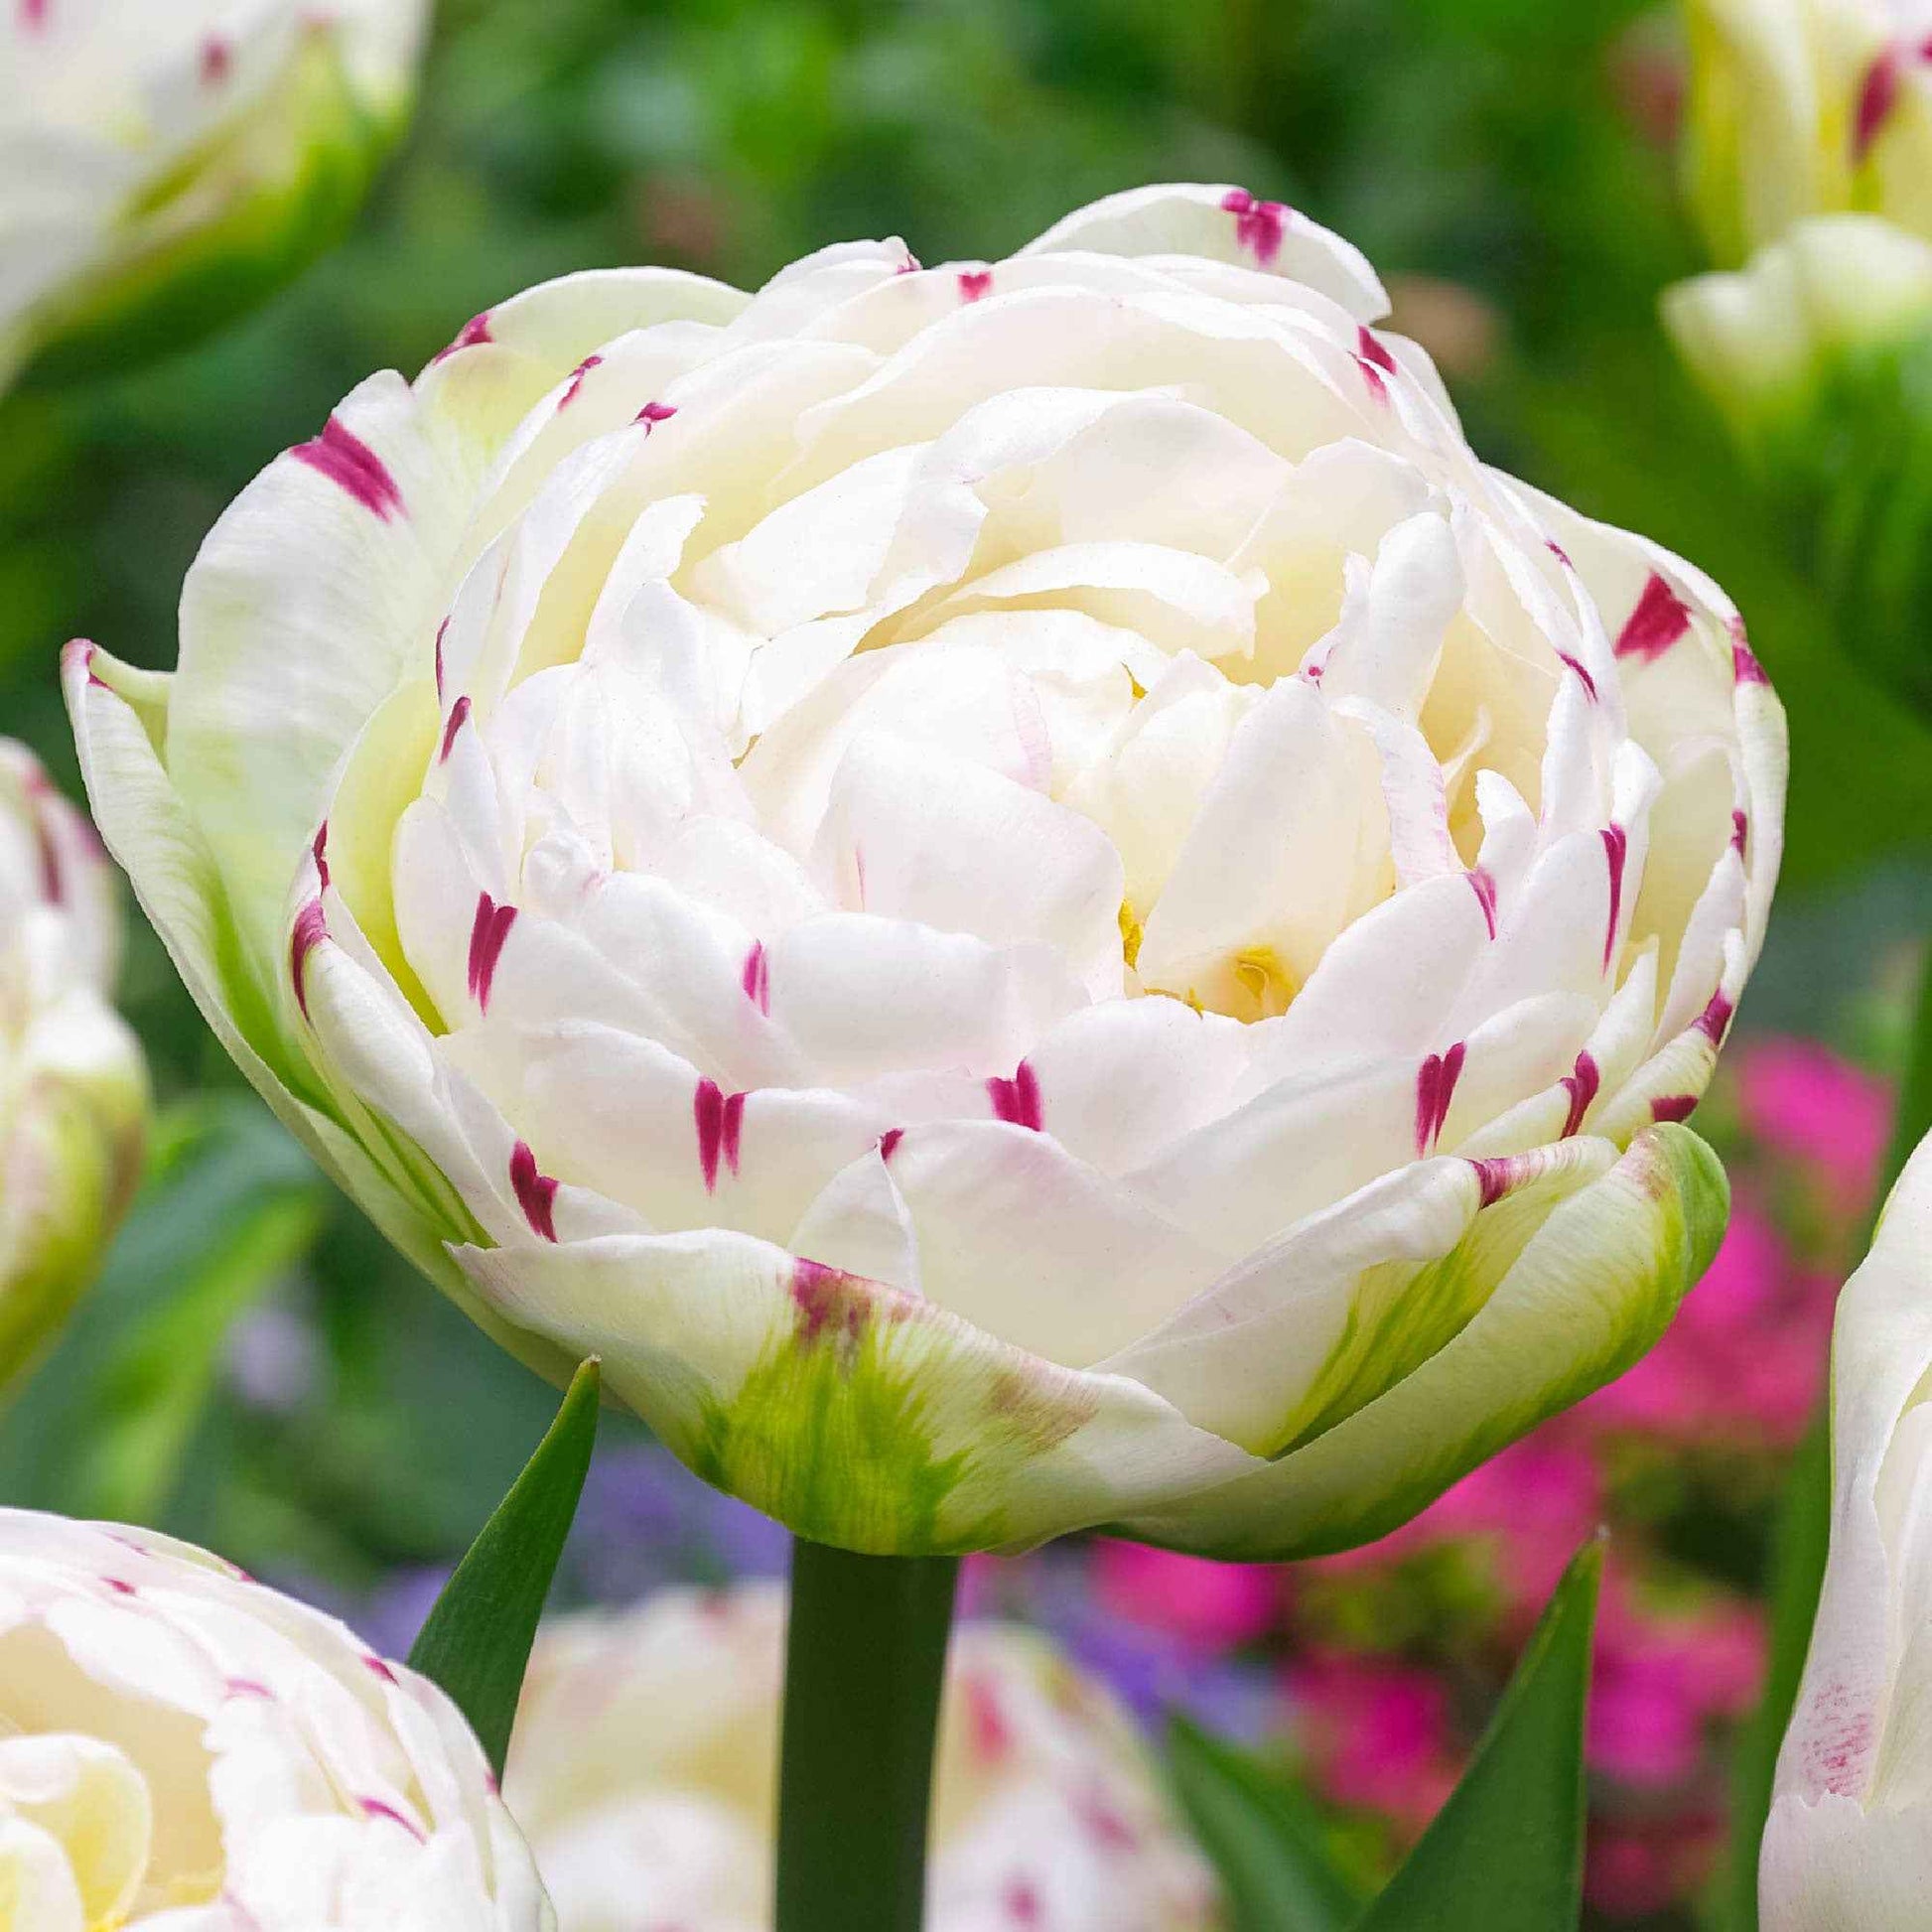 10x Dubbelbloemige tulpen Tulipa 'Danceline' wit - Populaire bloembollen